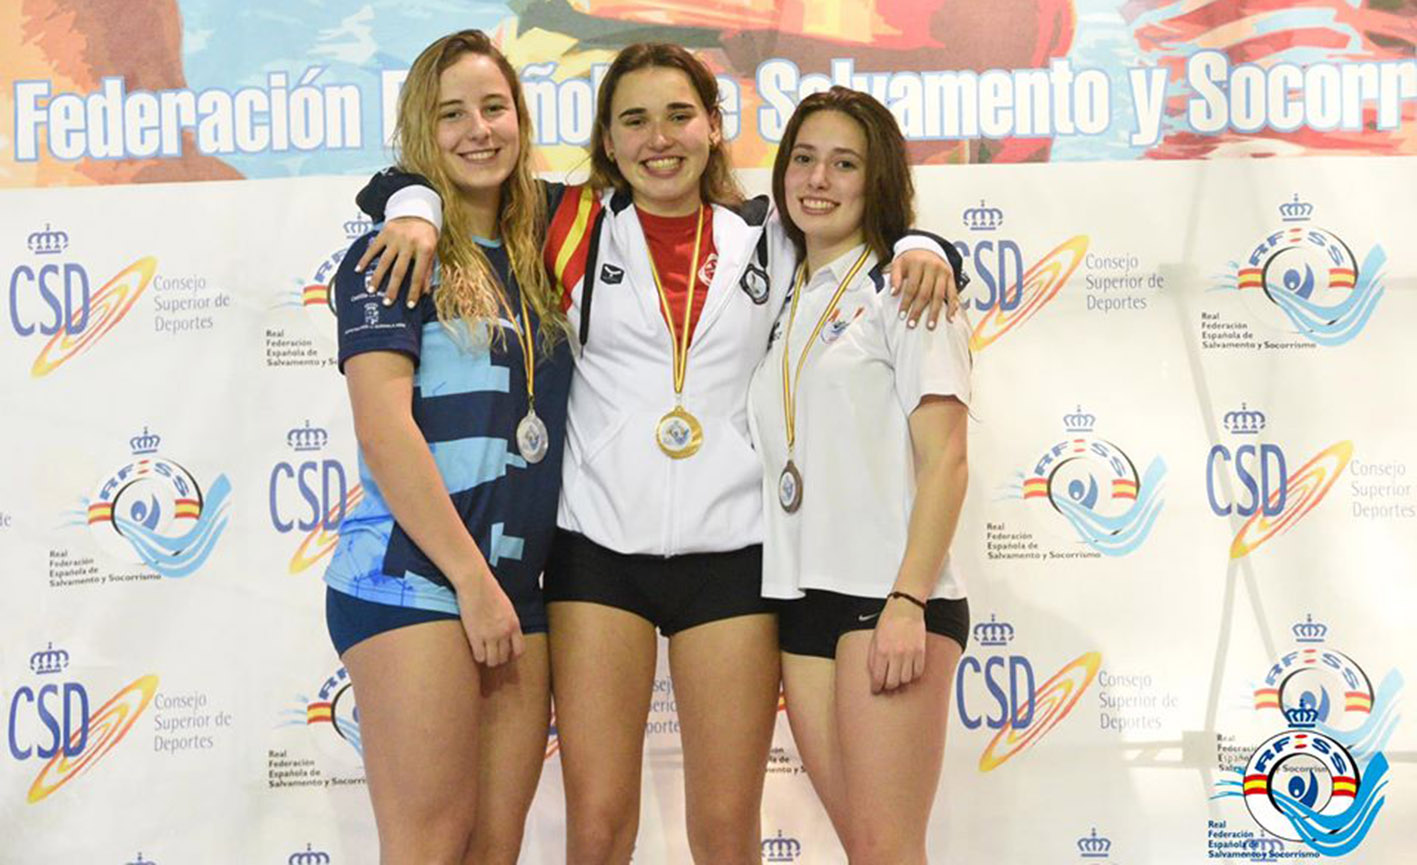 Miriam de Dios, en el centro de la imagen, consiguió nada menos que siete medallas en el Campeonato de España de Salvamento y Socorrismo.